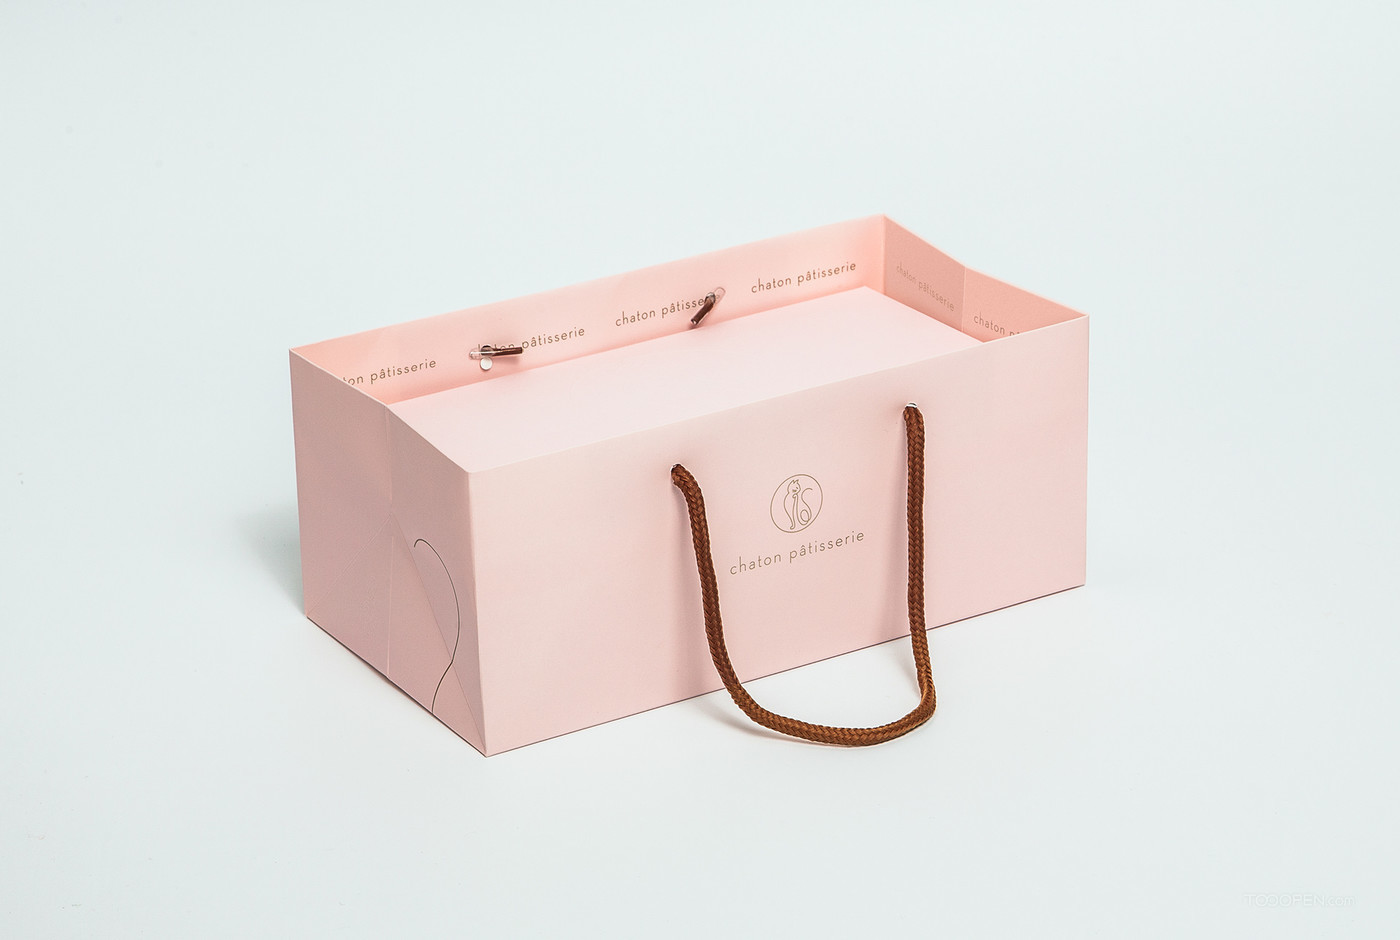 粉色系甜心蛋糕美食包装设计作品欣赏-04